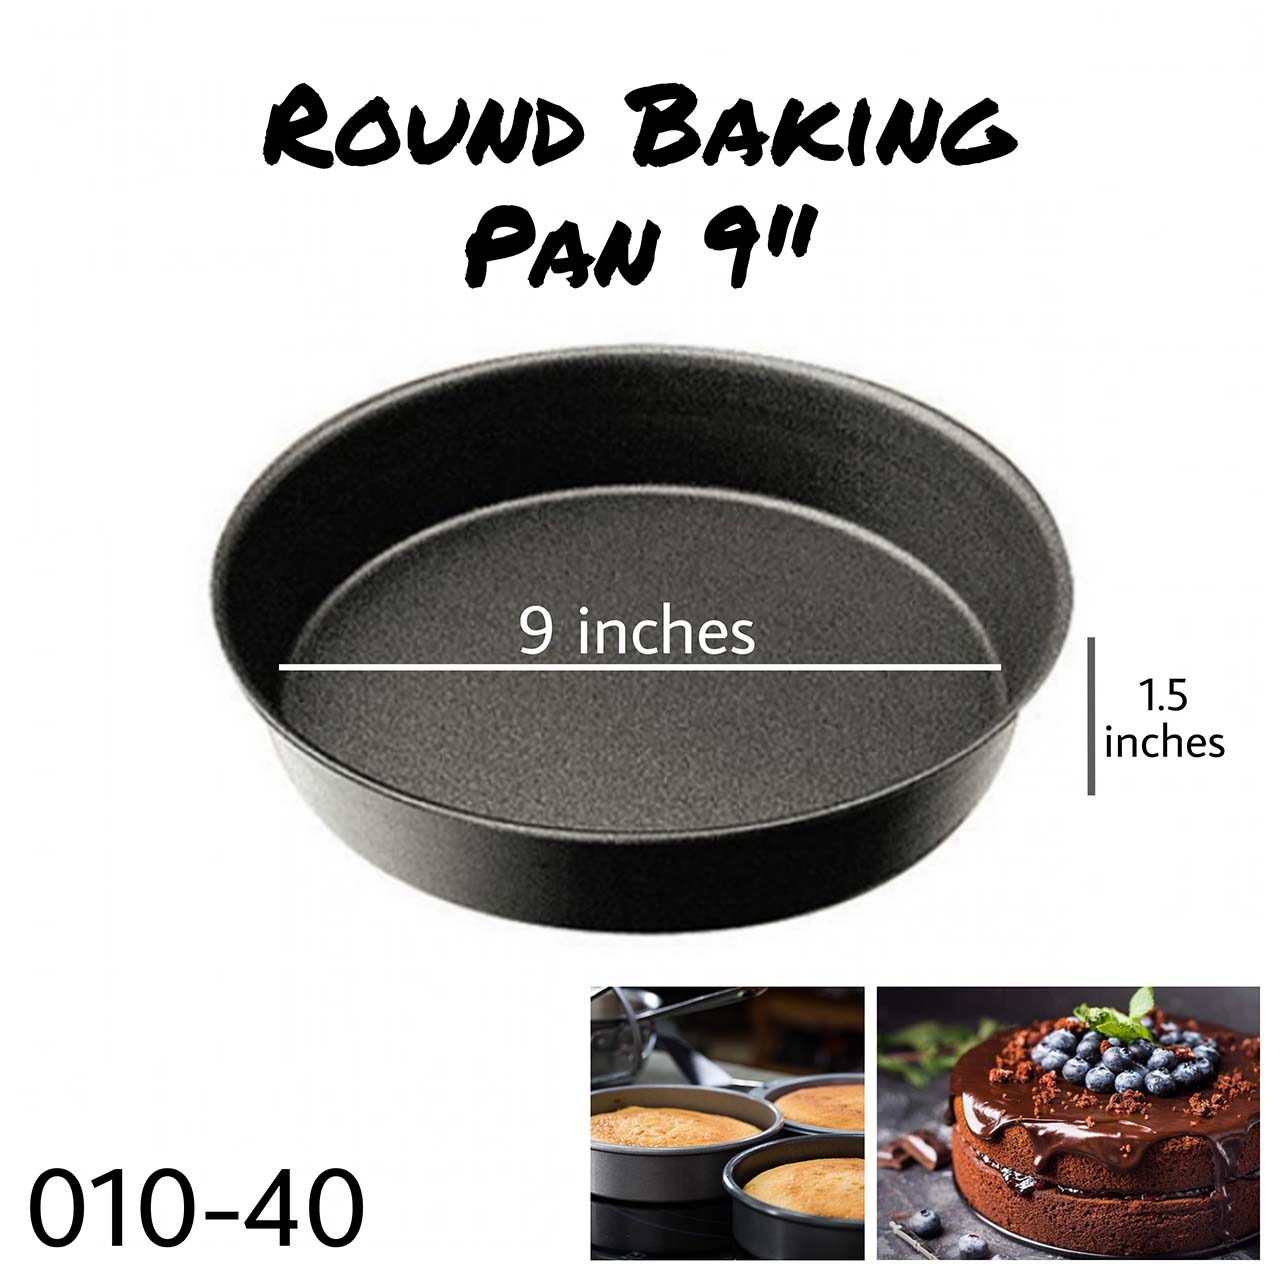 Round Baking Pan 9"